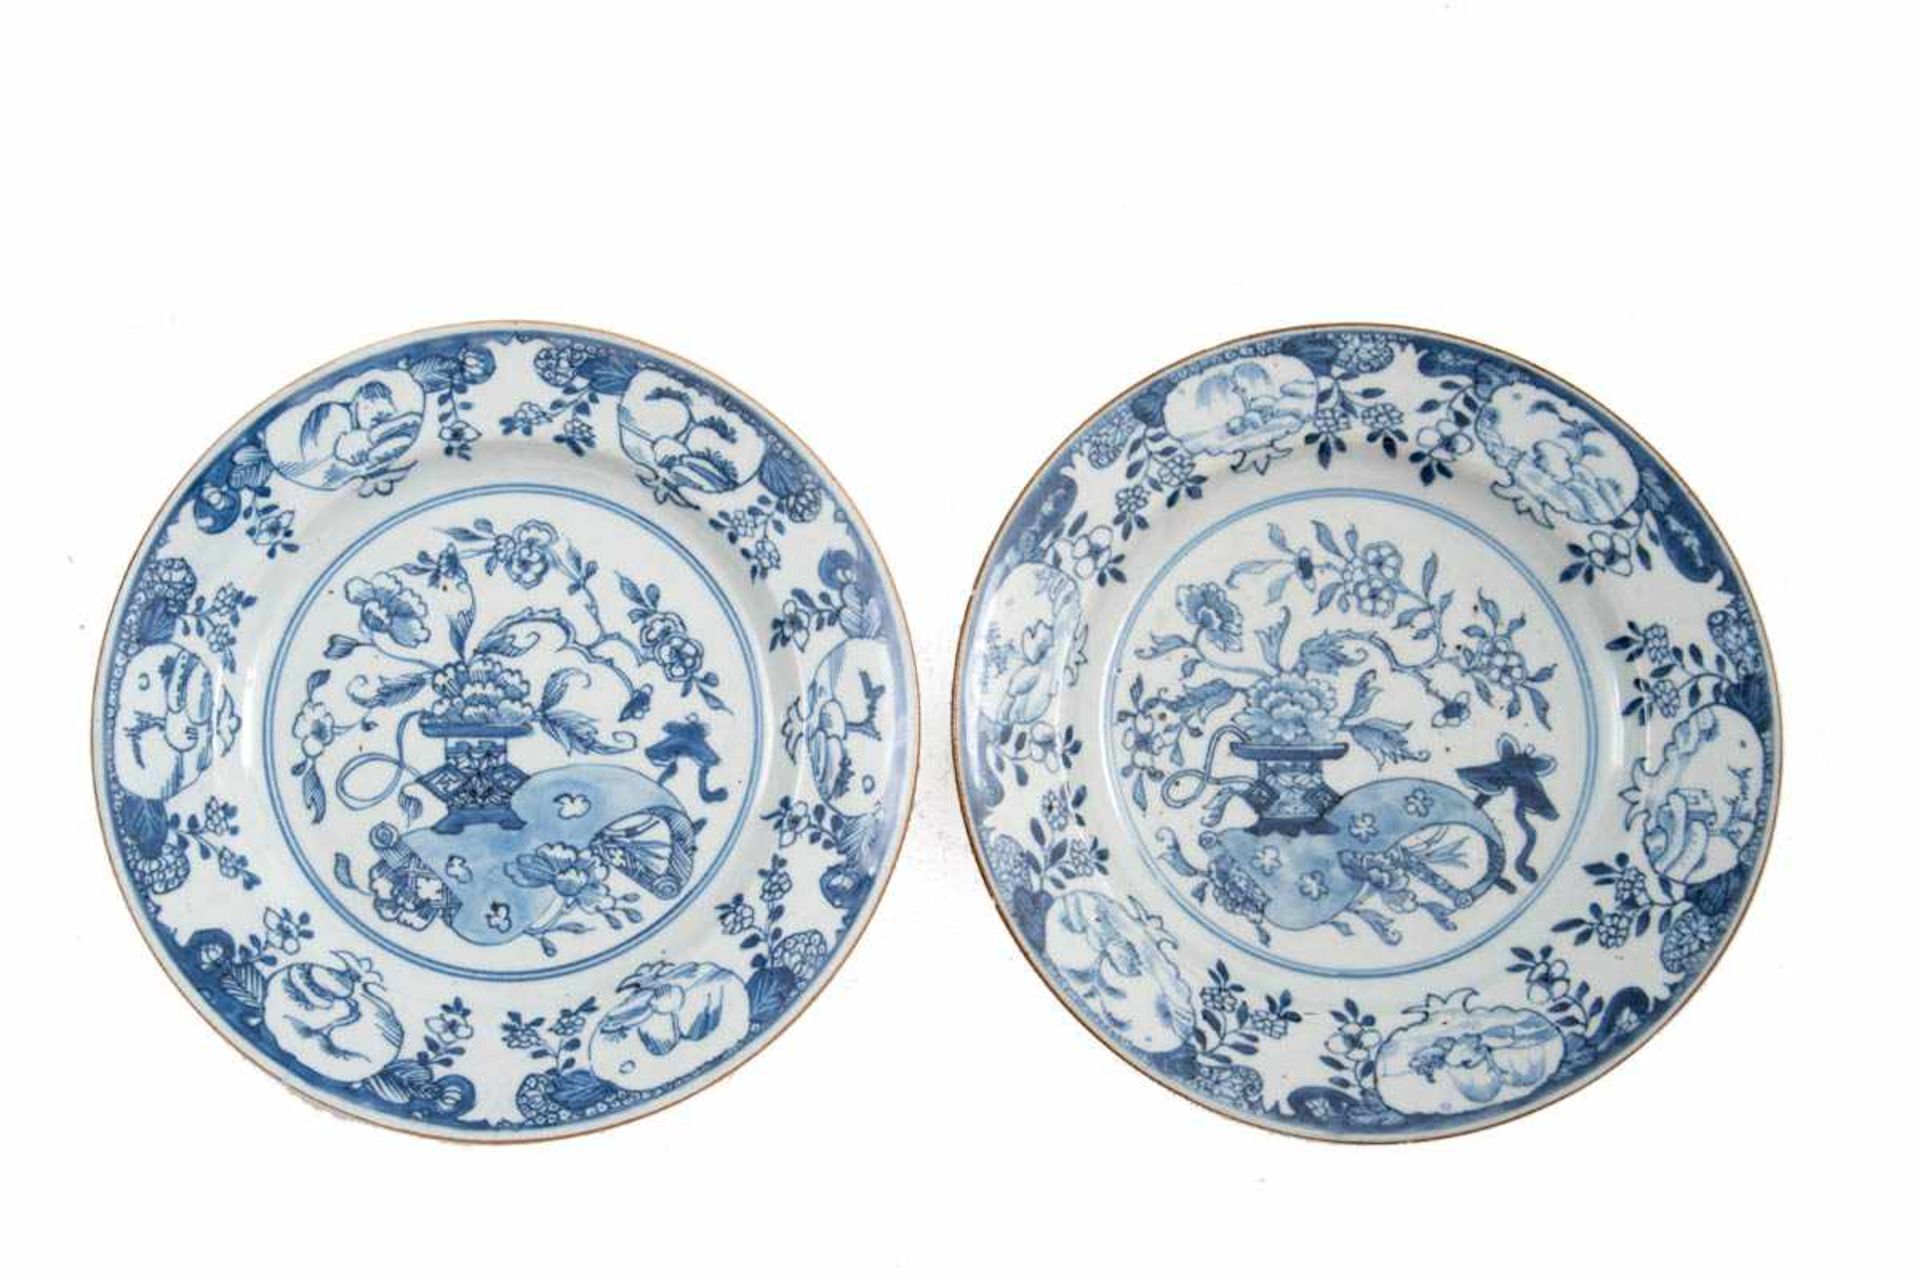 Paar Teller, China 19. Jh. Porzellan unter der Glasur blau bemalt. Spiegel mit Vasenmotiv, Fahne mit